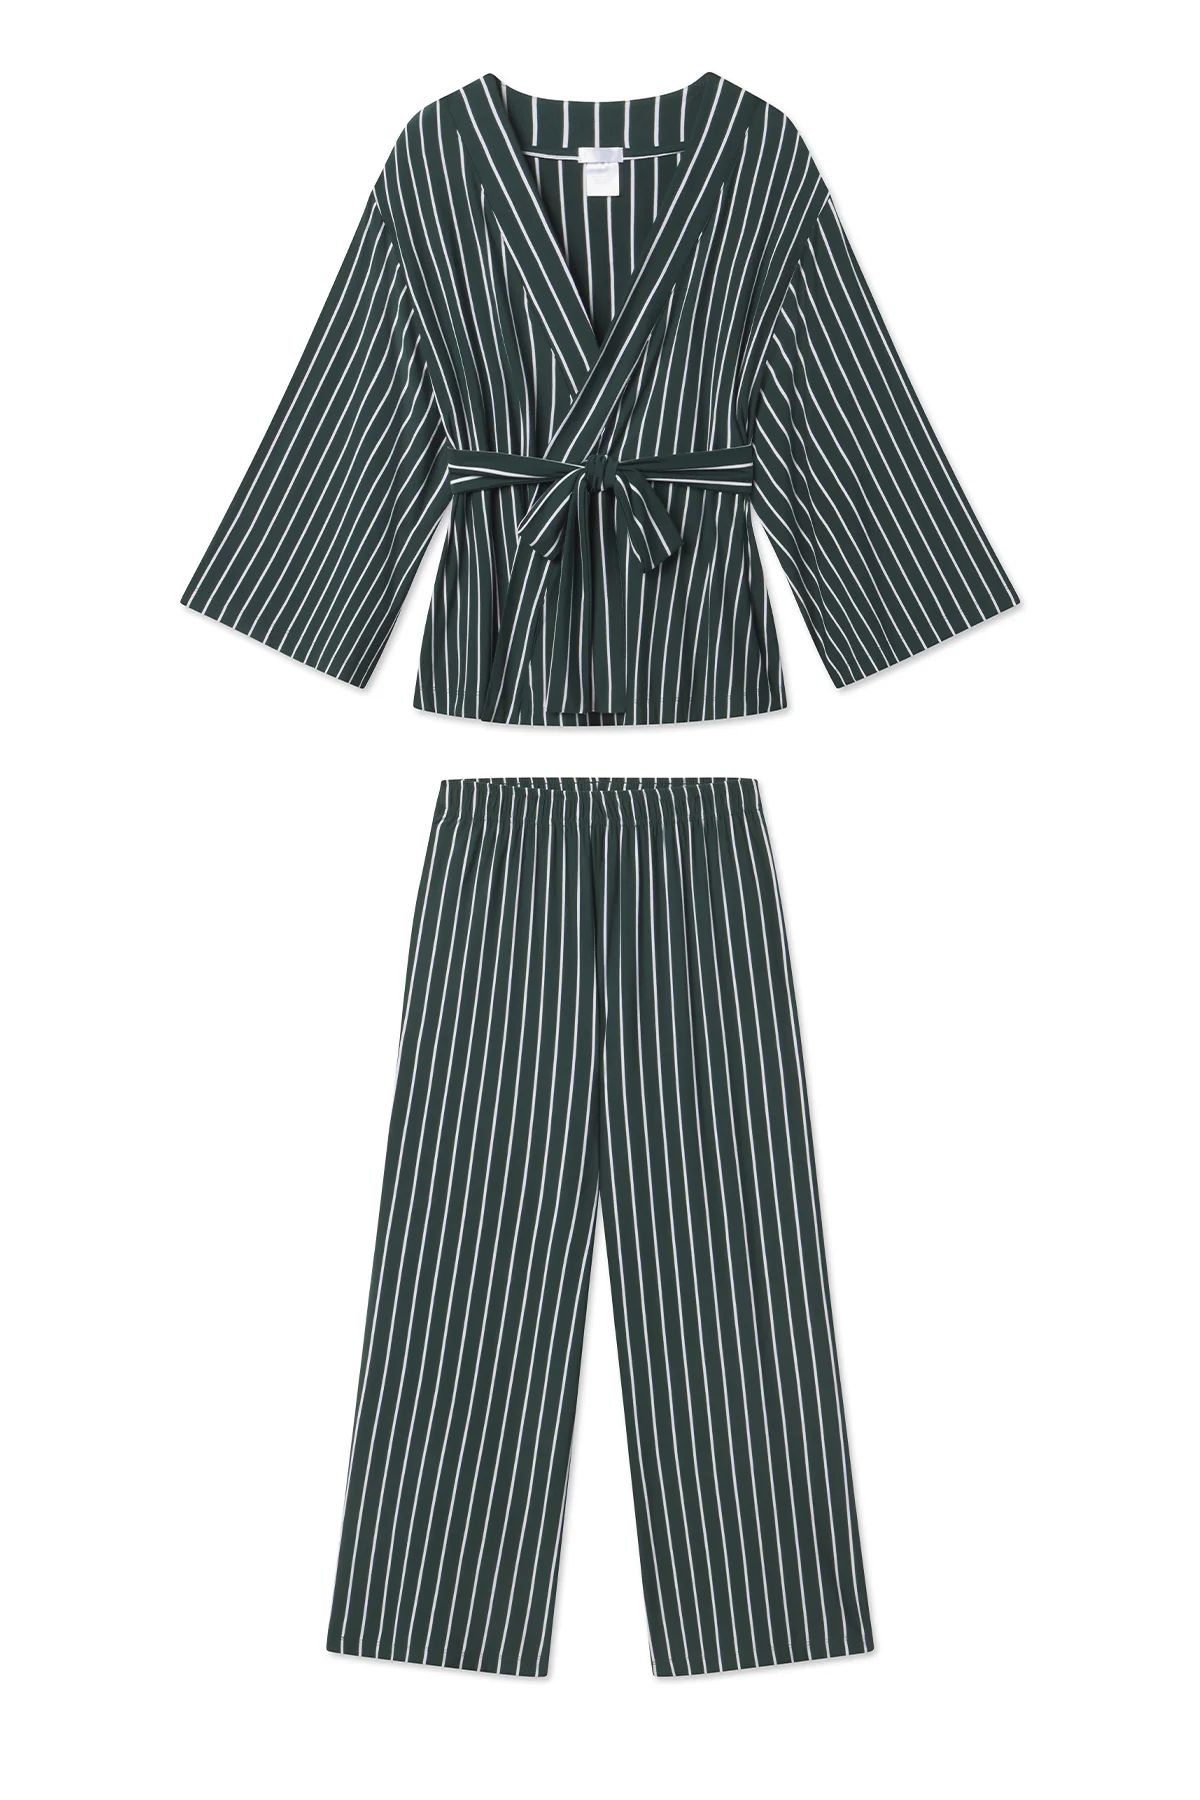 DreamKnit Kimono Pajama Set in Red Stripe | Lake Pajamas